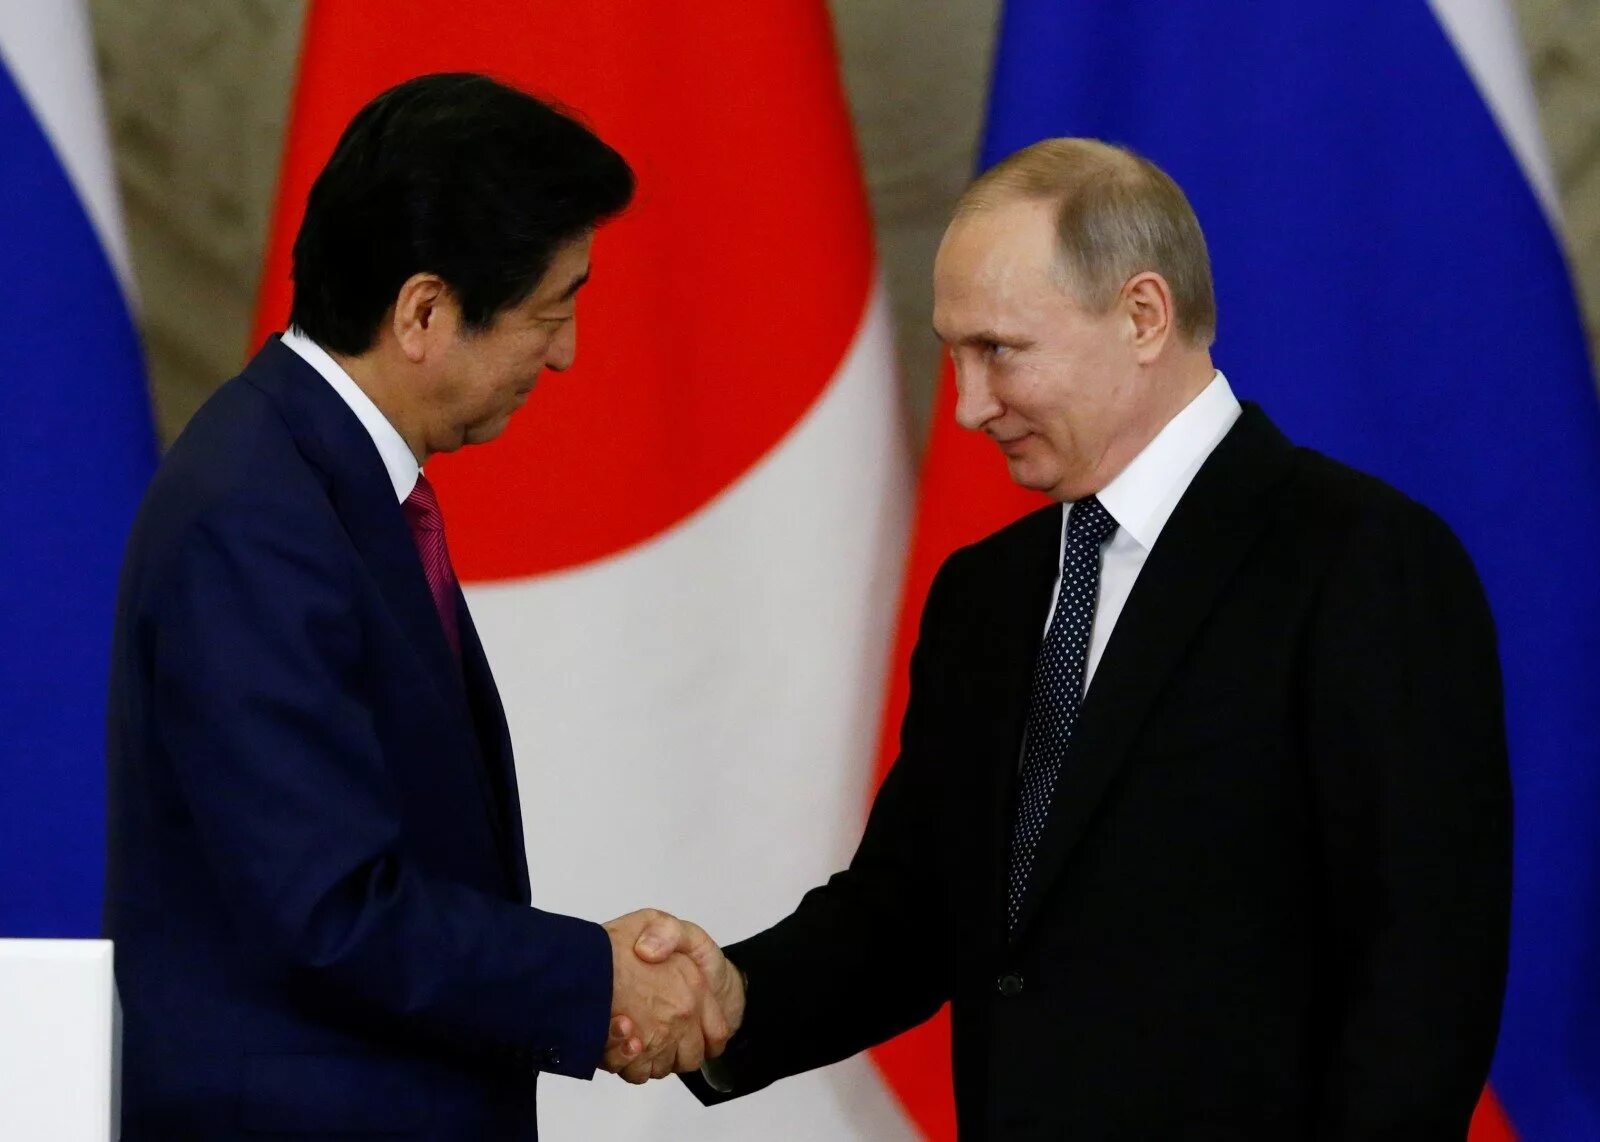 Переговоры Путина с Японией по Курилам. Переговоры России и Японии. Спор между японией и россией